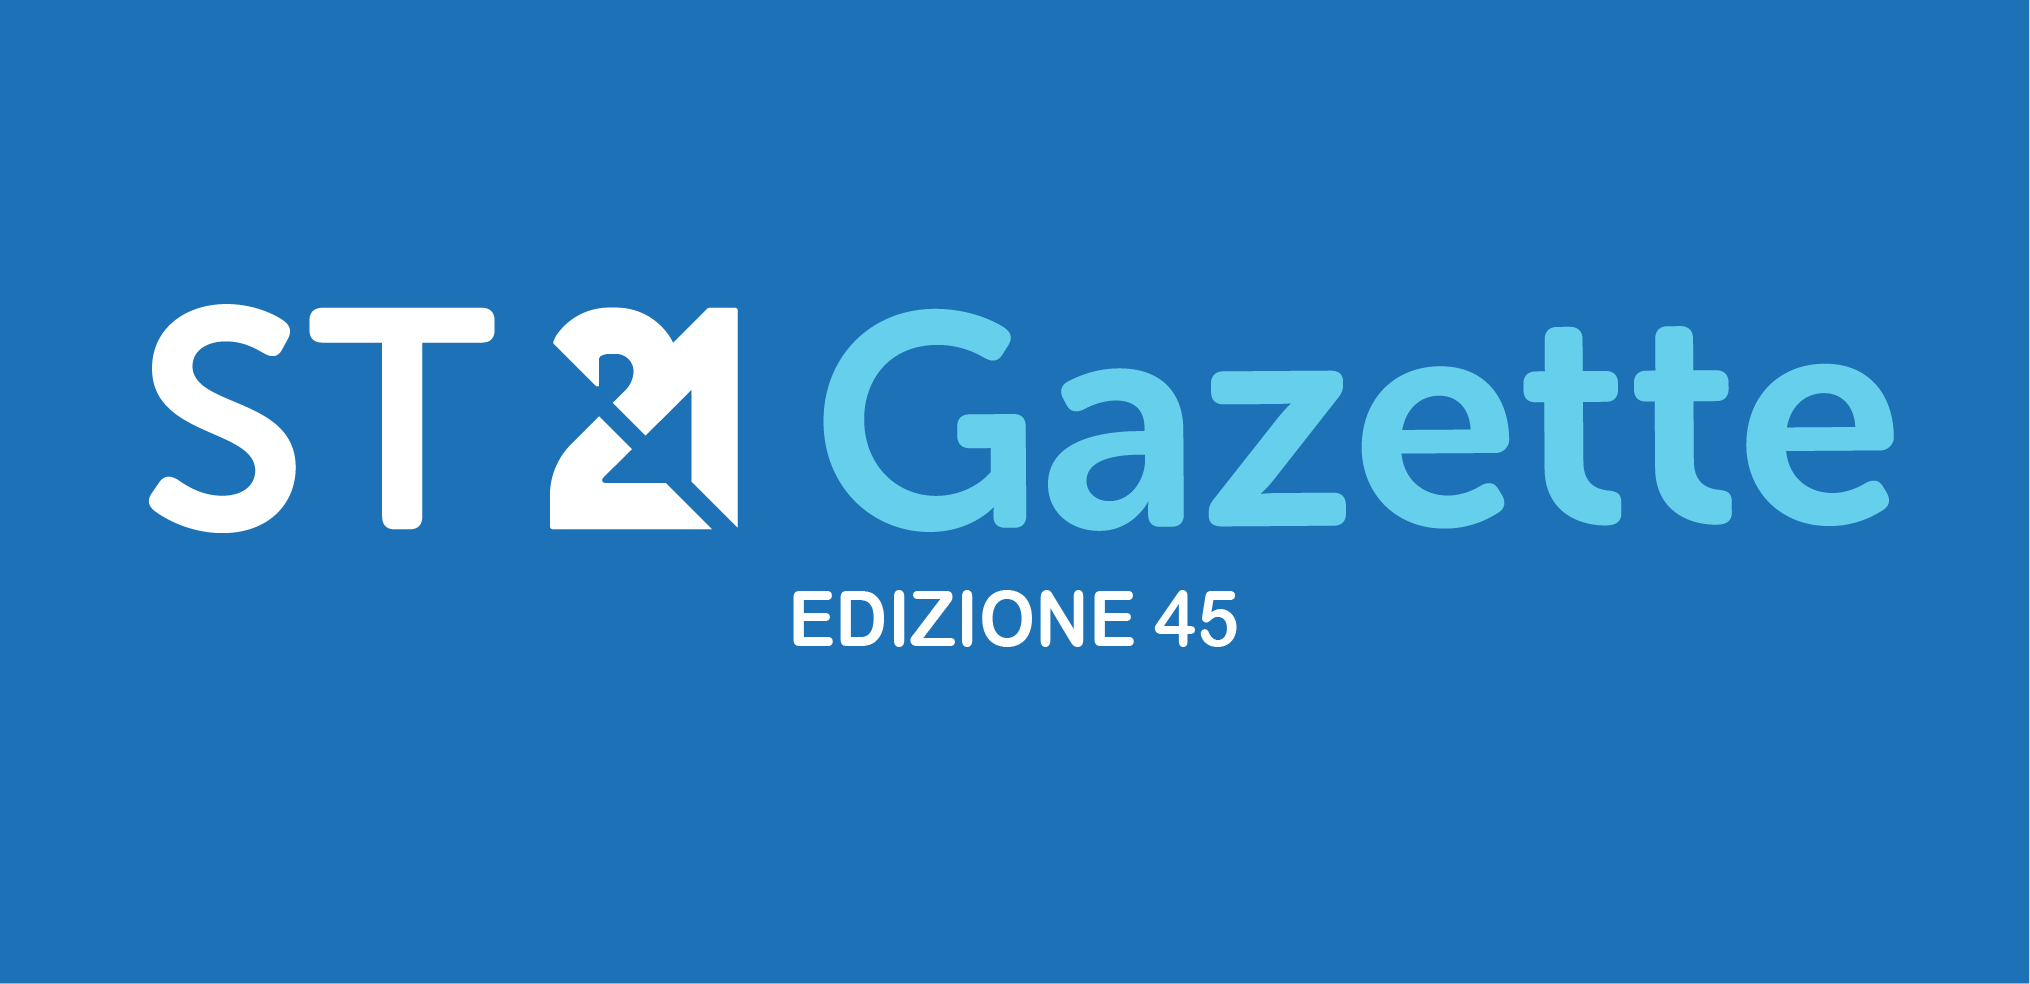 ST21 – Gazette Edizione 45